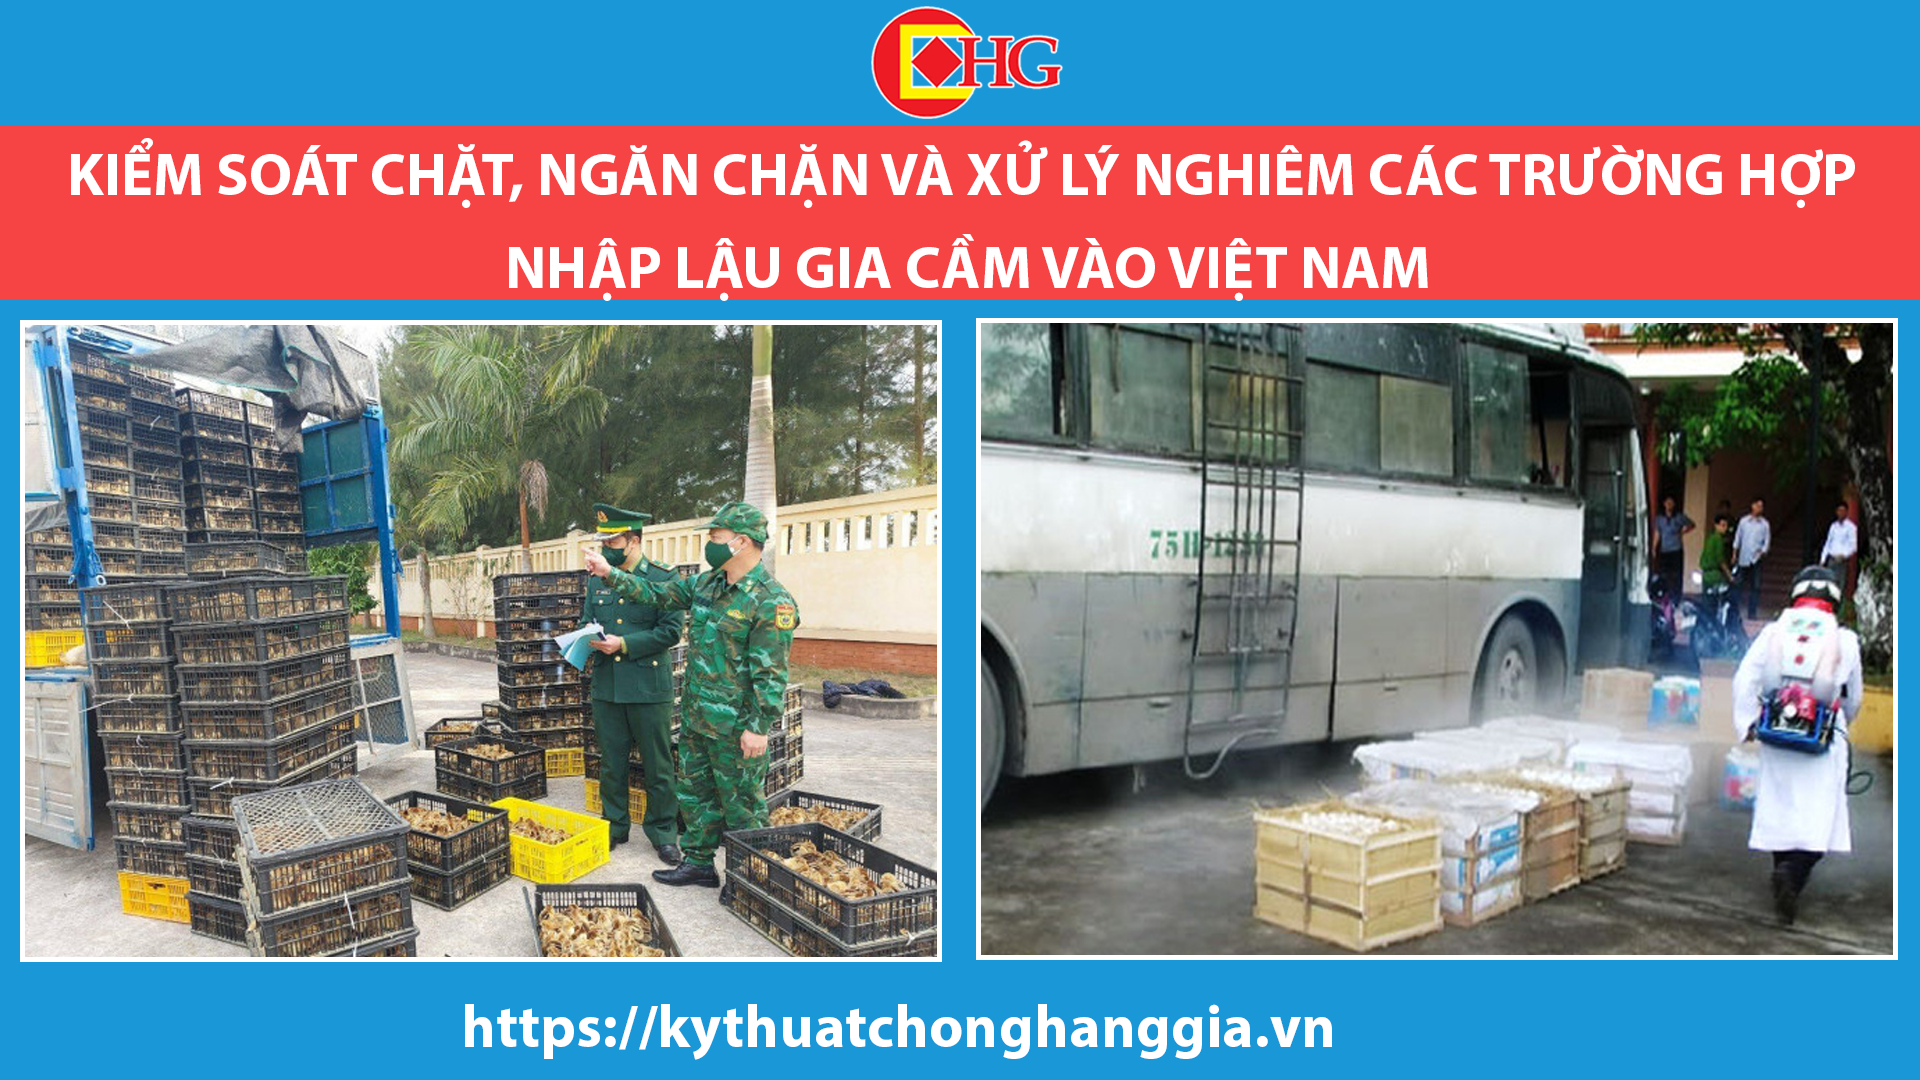 Kiểm soát chặt, ngăn chặn và xử lý nghiêm các trường hợp nhập lậu gia cầm vào Việt Nam